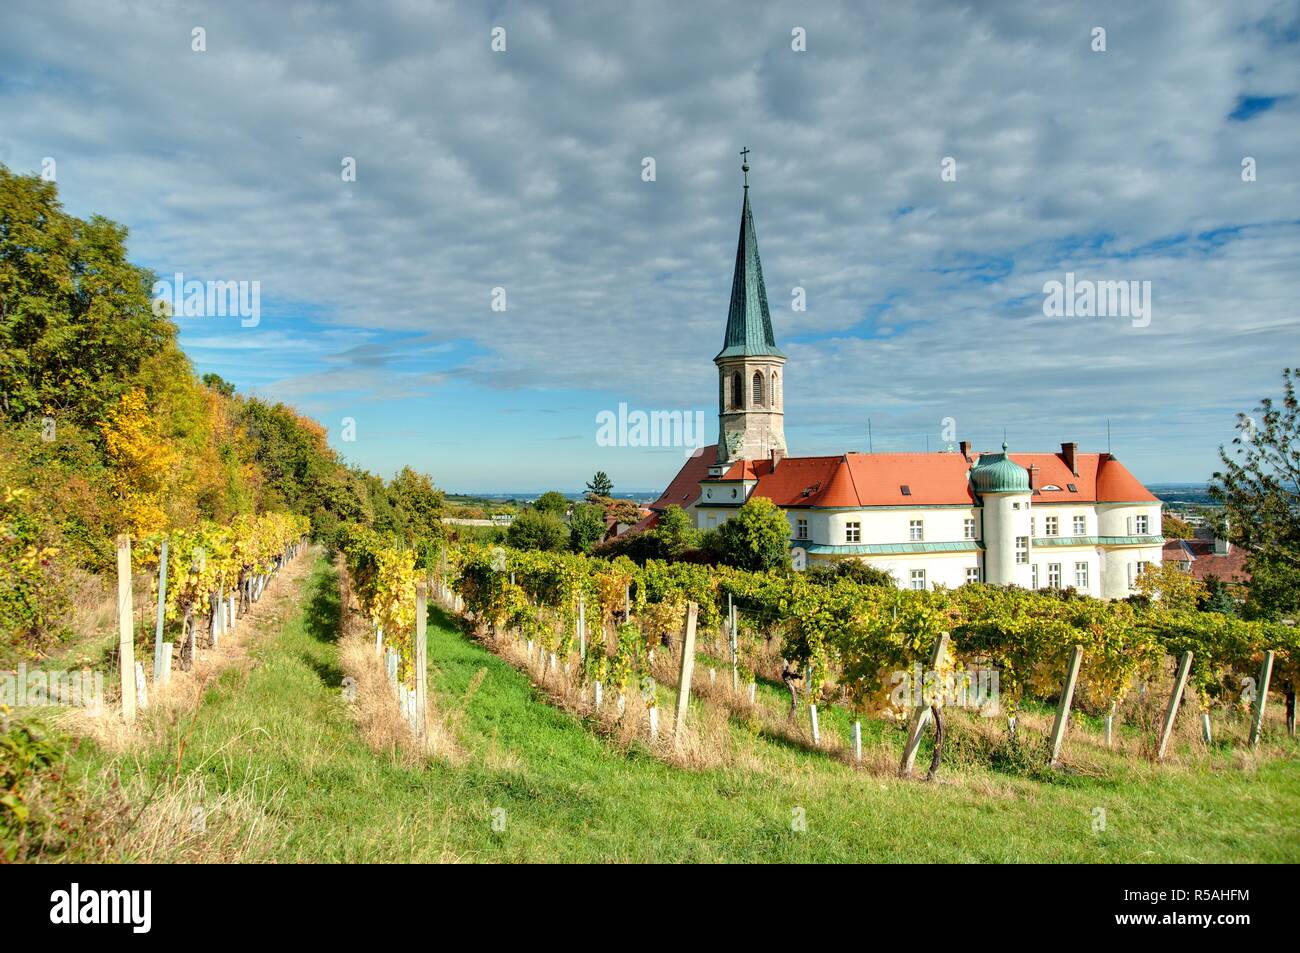 Niederösterreich, Gumpoldskirchen - Austria, Gumpoldskirchen Stock Photo